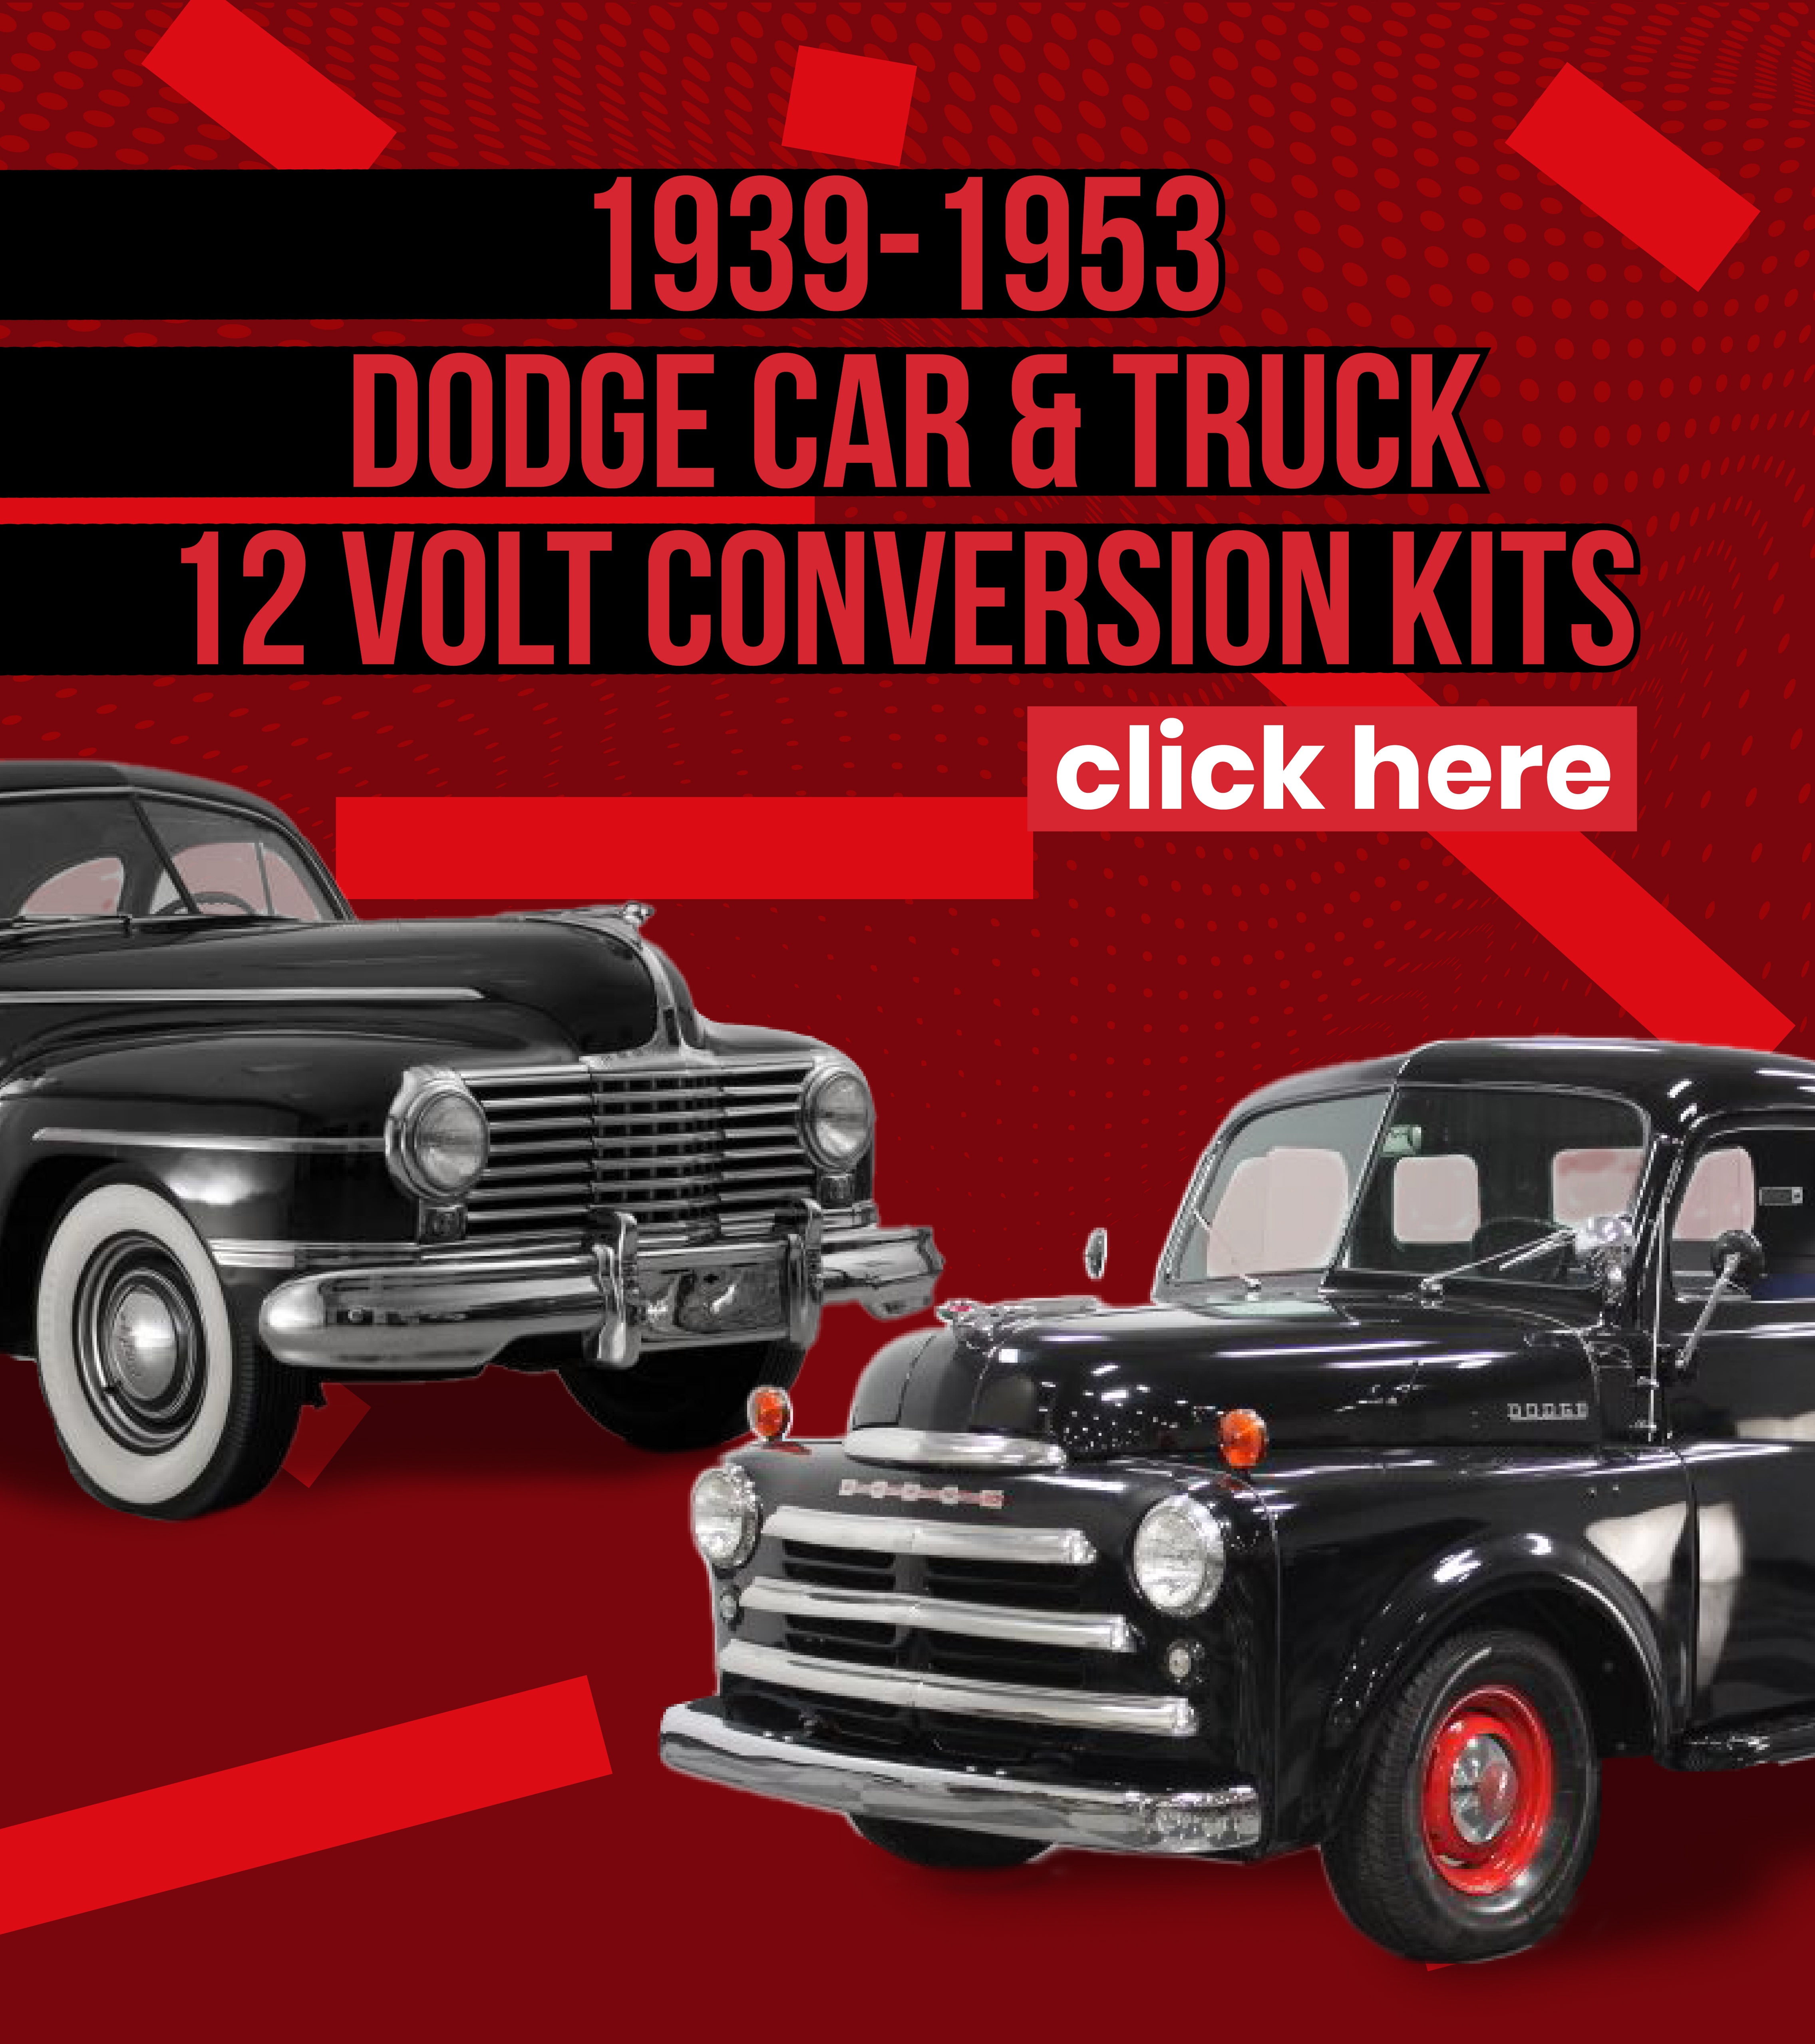 Dodge car truck 12 volt conversion kits